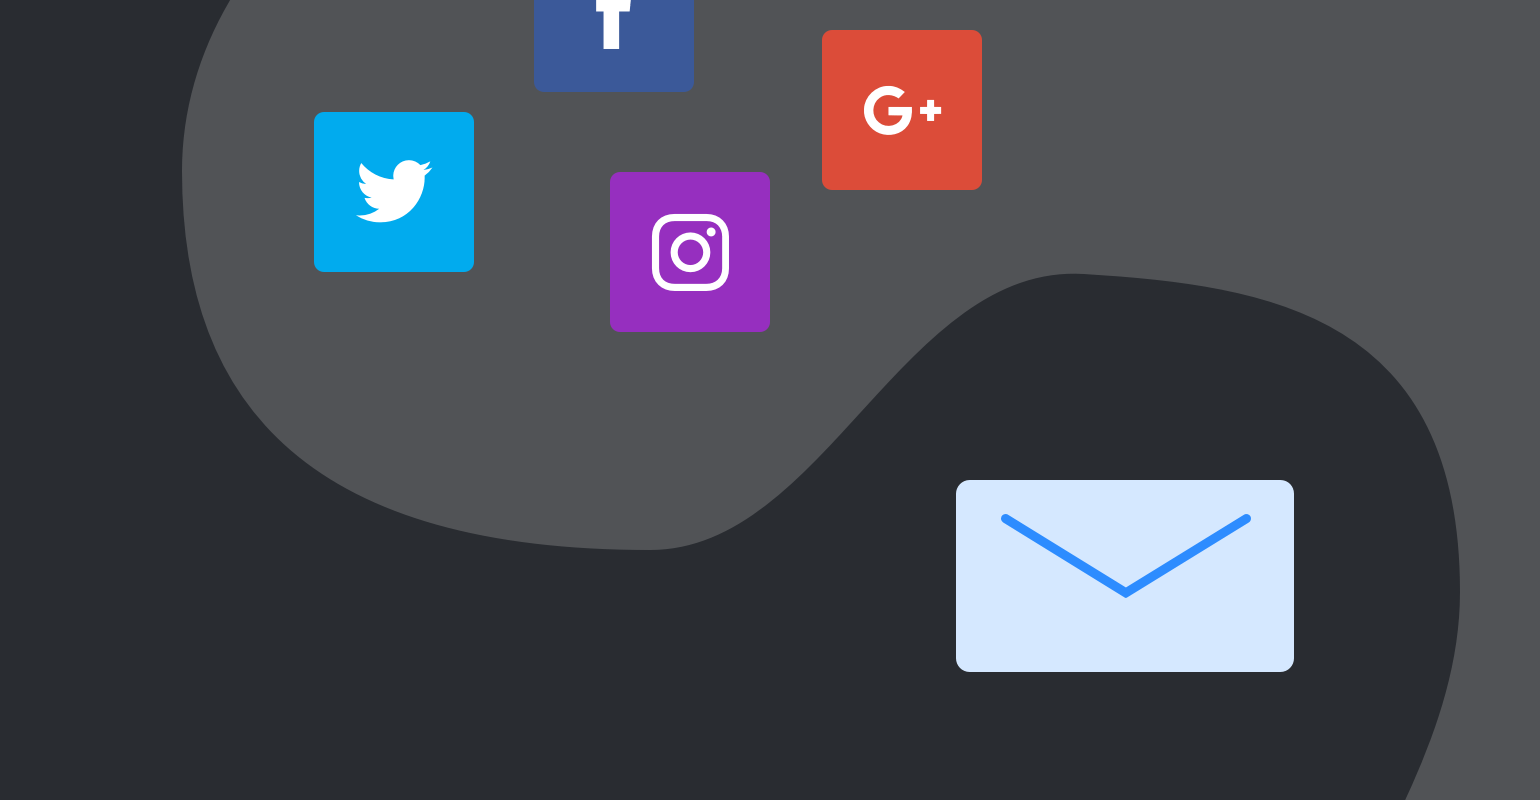 Email vs. redes sociales icono de bandeja de entrada vs iconos de redes sociales - MailerLite